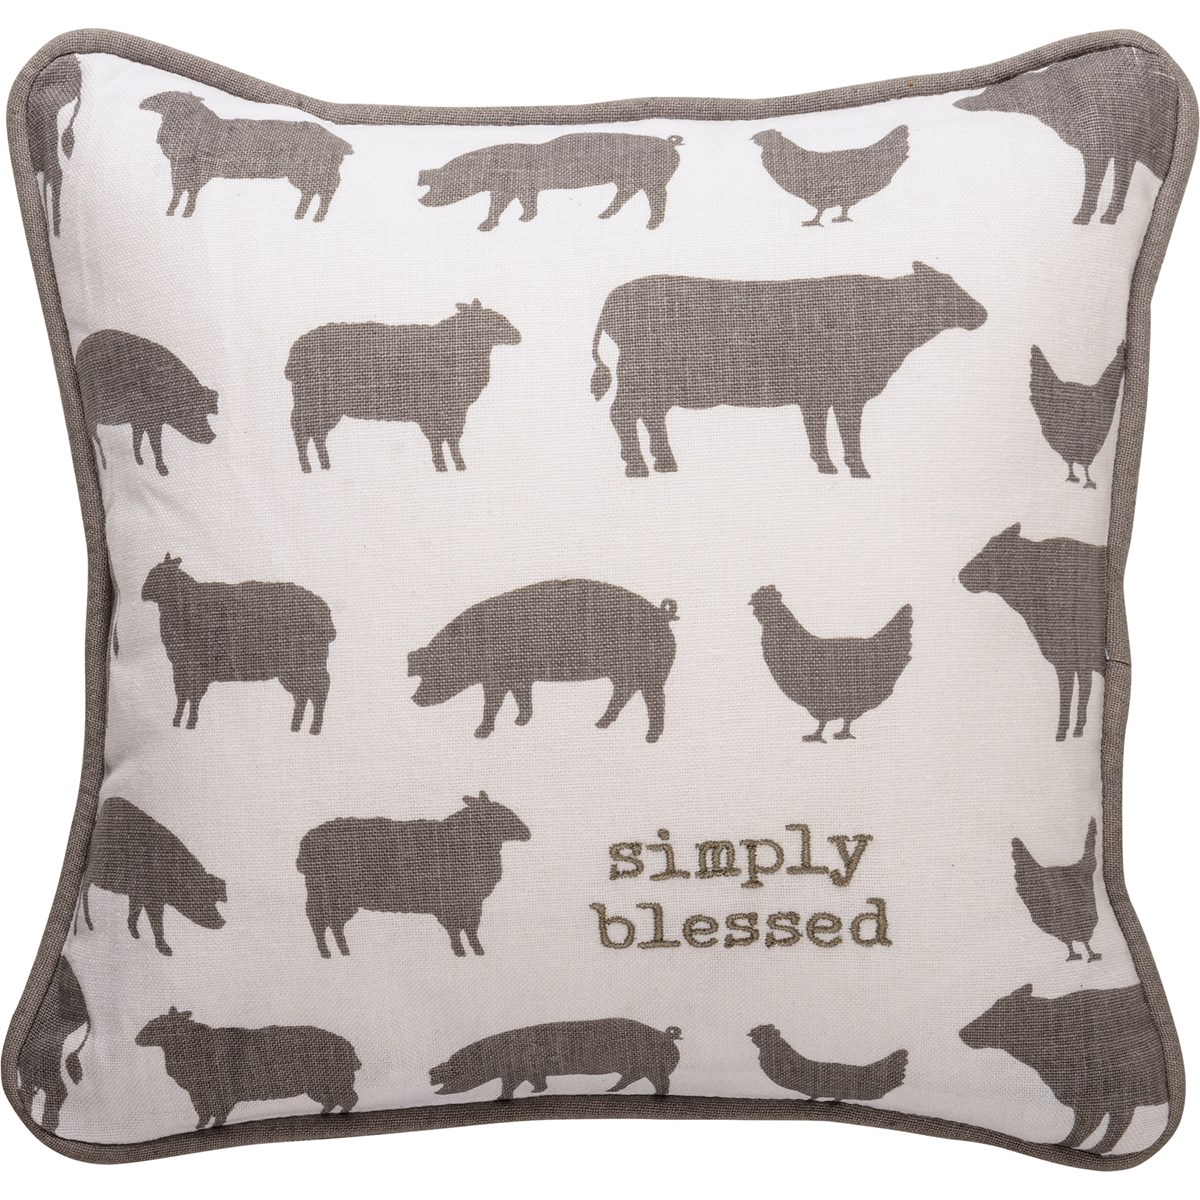 Simply Blessed Pillow - Cotton, Linen, Zipper